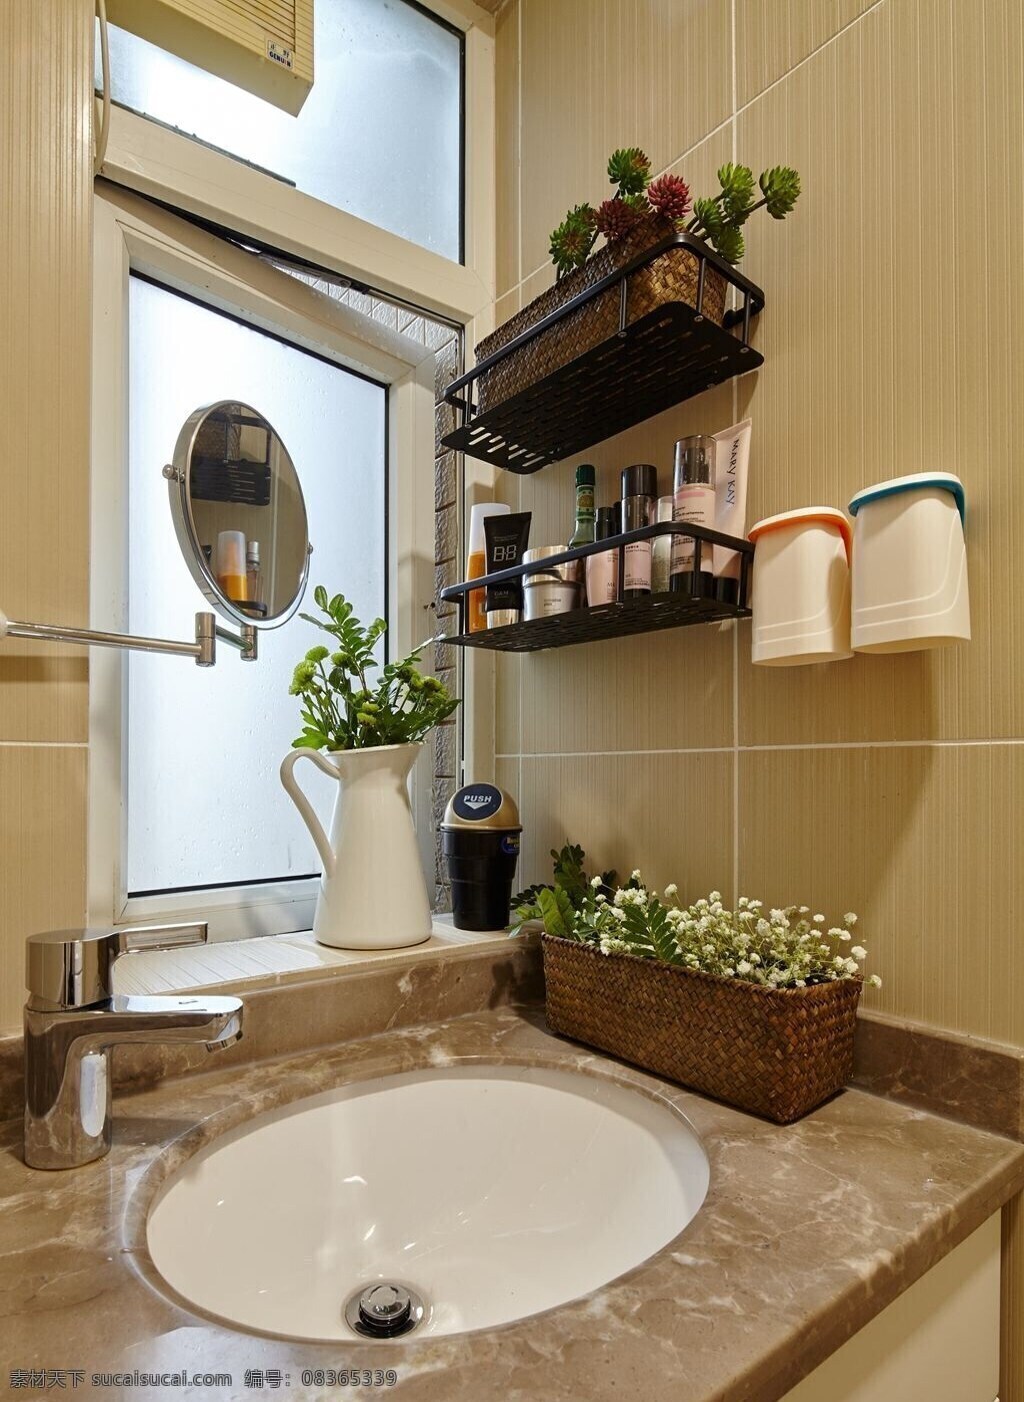 简约 时尚 卫生间 洗手台 装修 效果图 窗户 灰色墙壁 排气扇 置物架